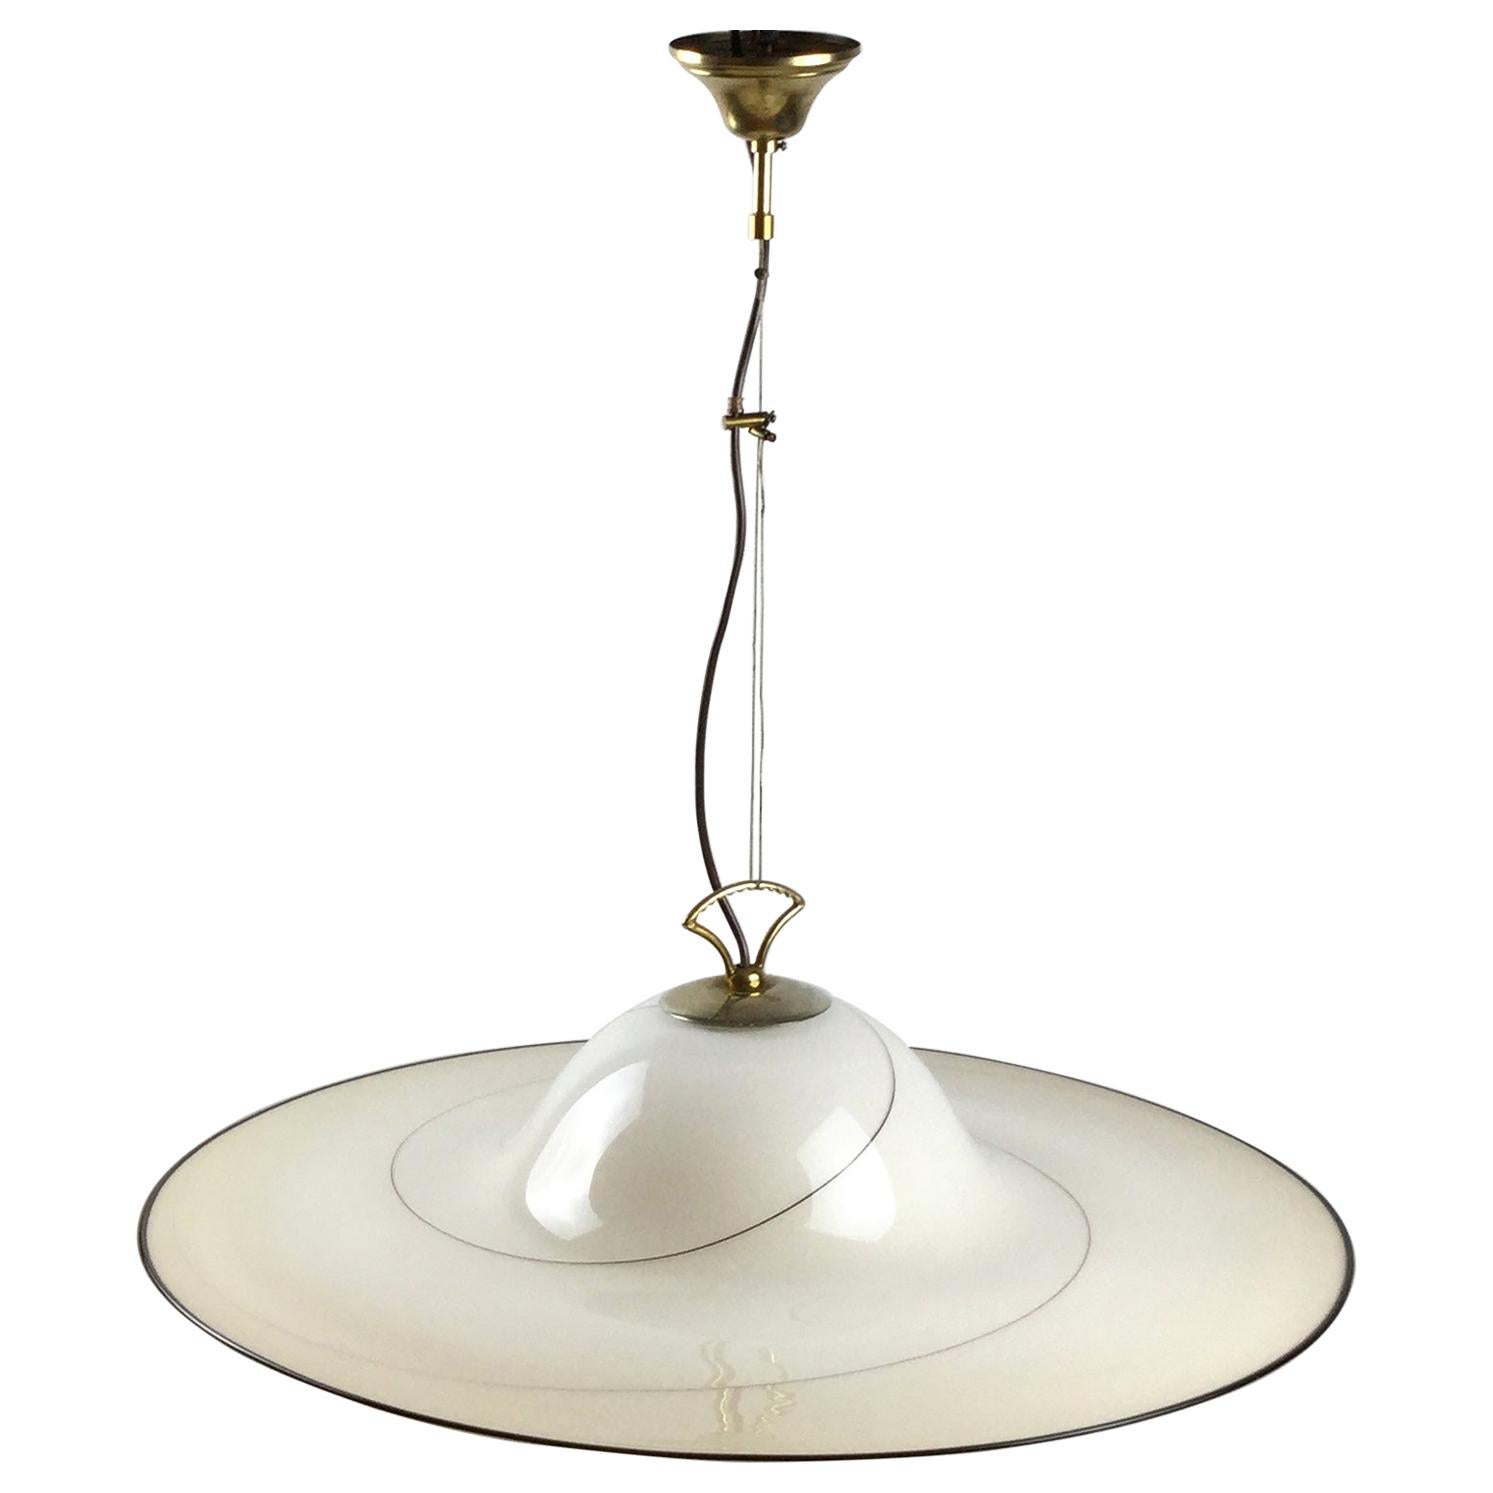 1980s Murano Italian Glass Pendant Lamp Attributed to Seguso Vetri d'Arte For Sale